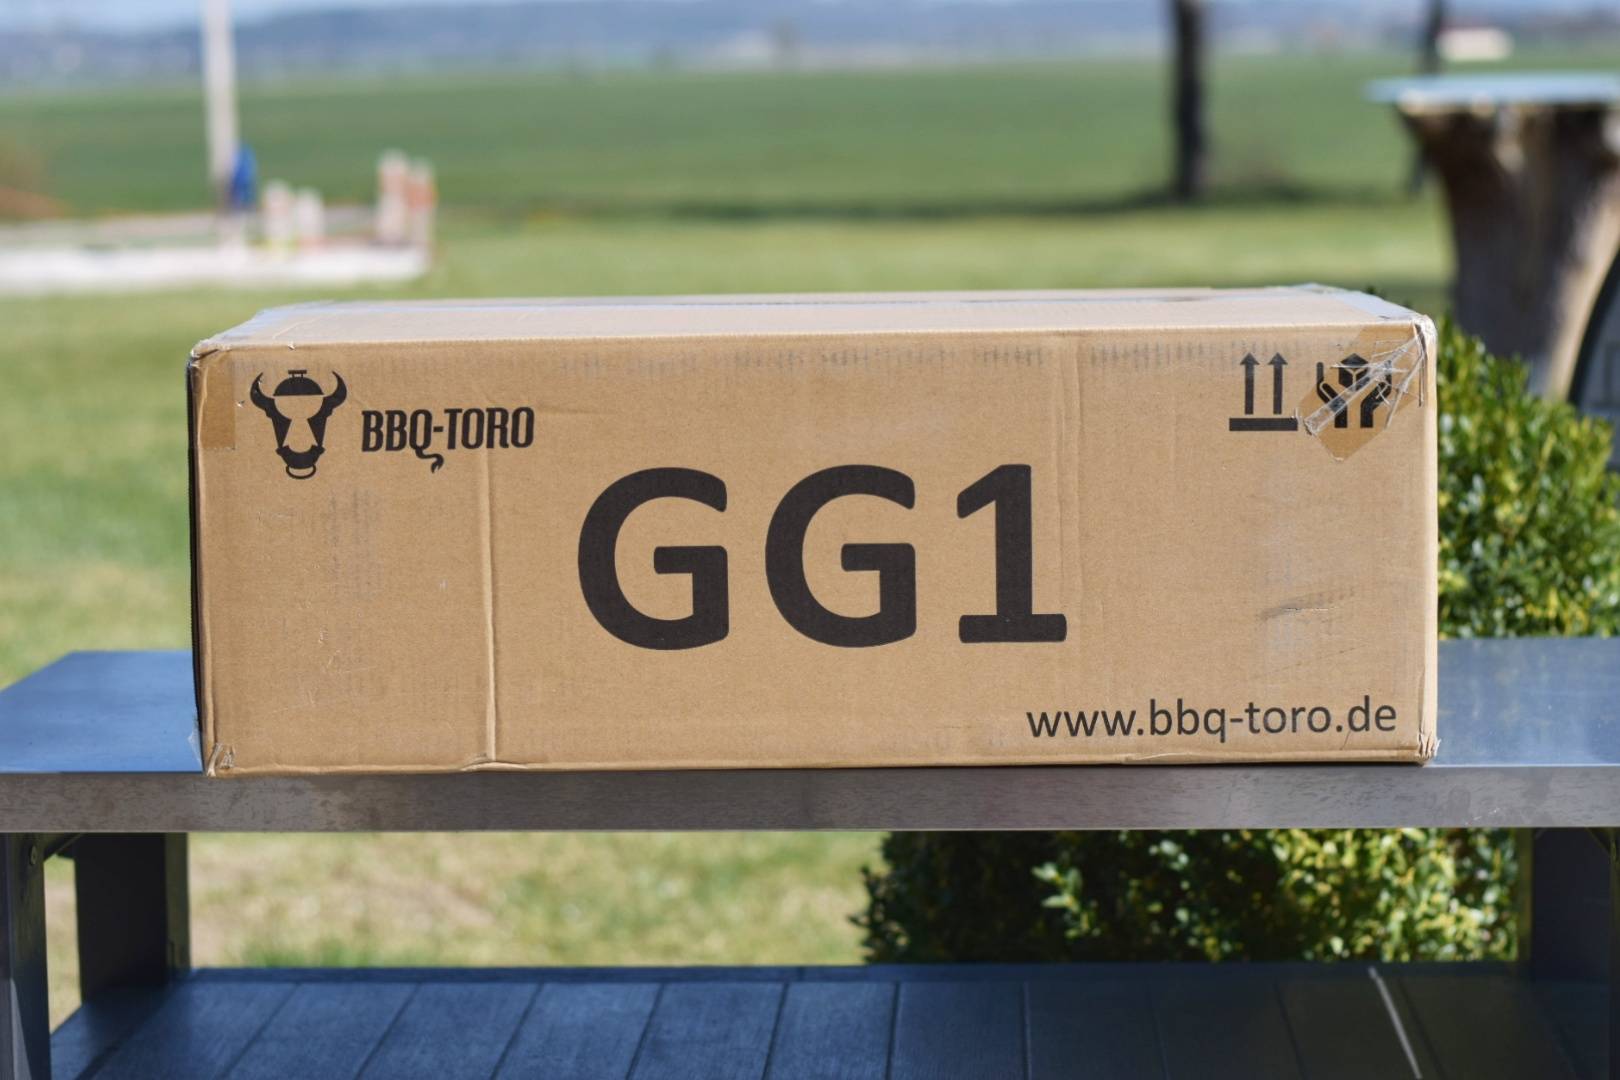 BBQ-Toro Karton GG1